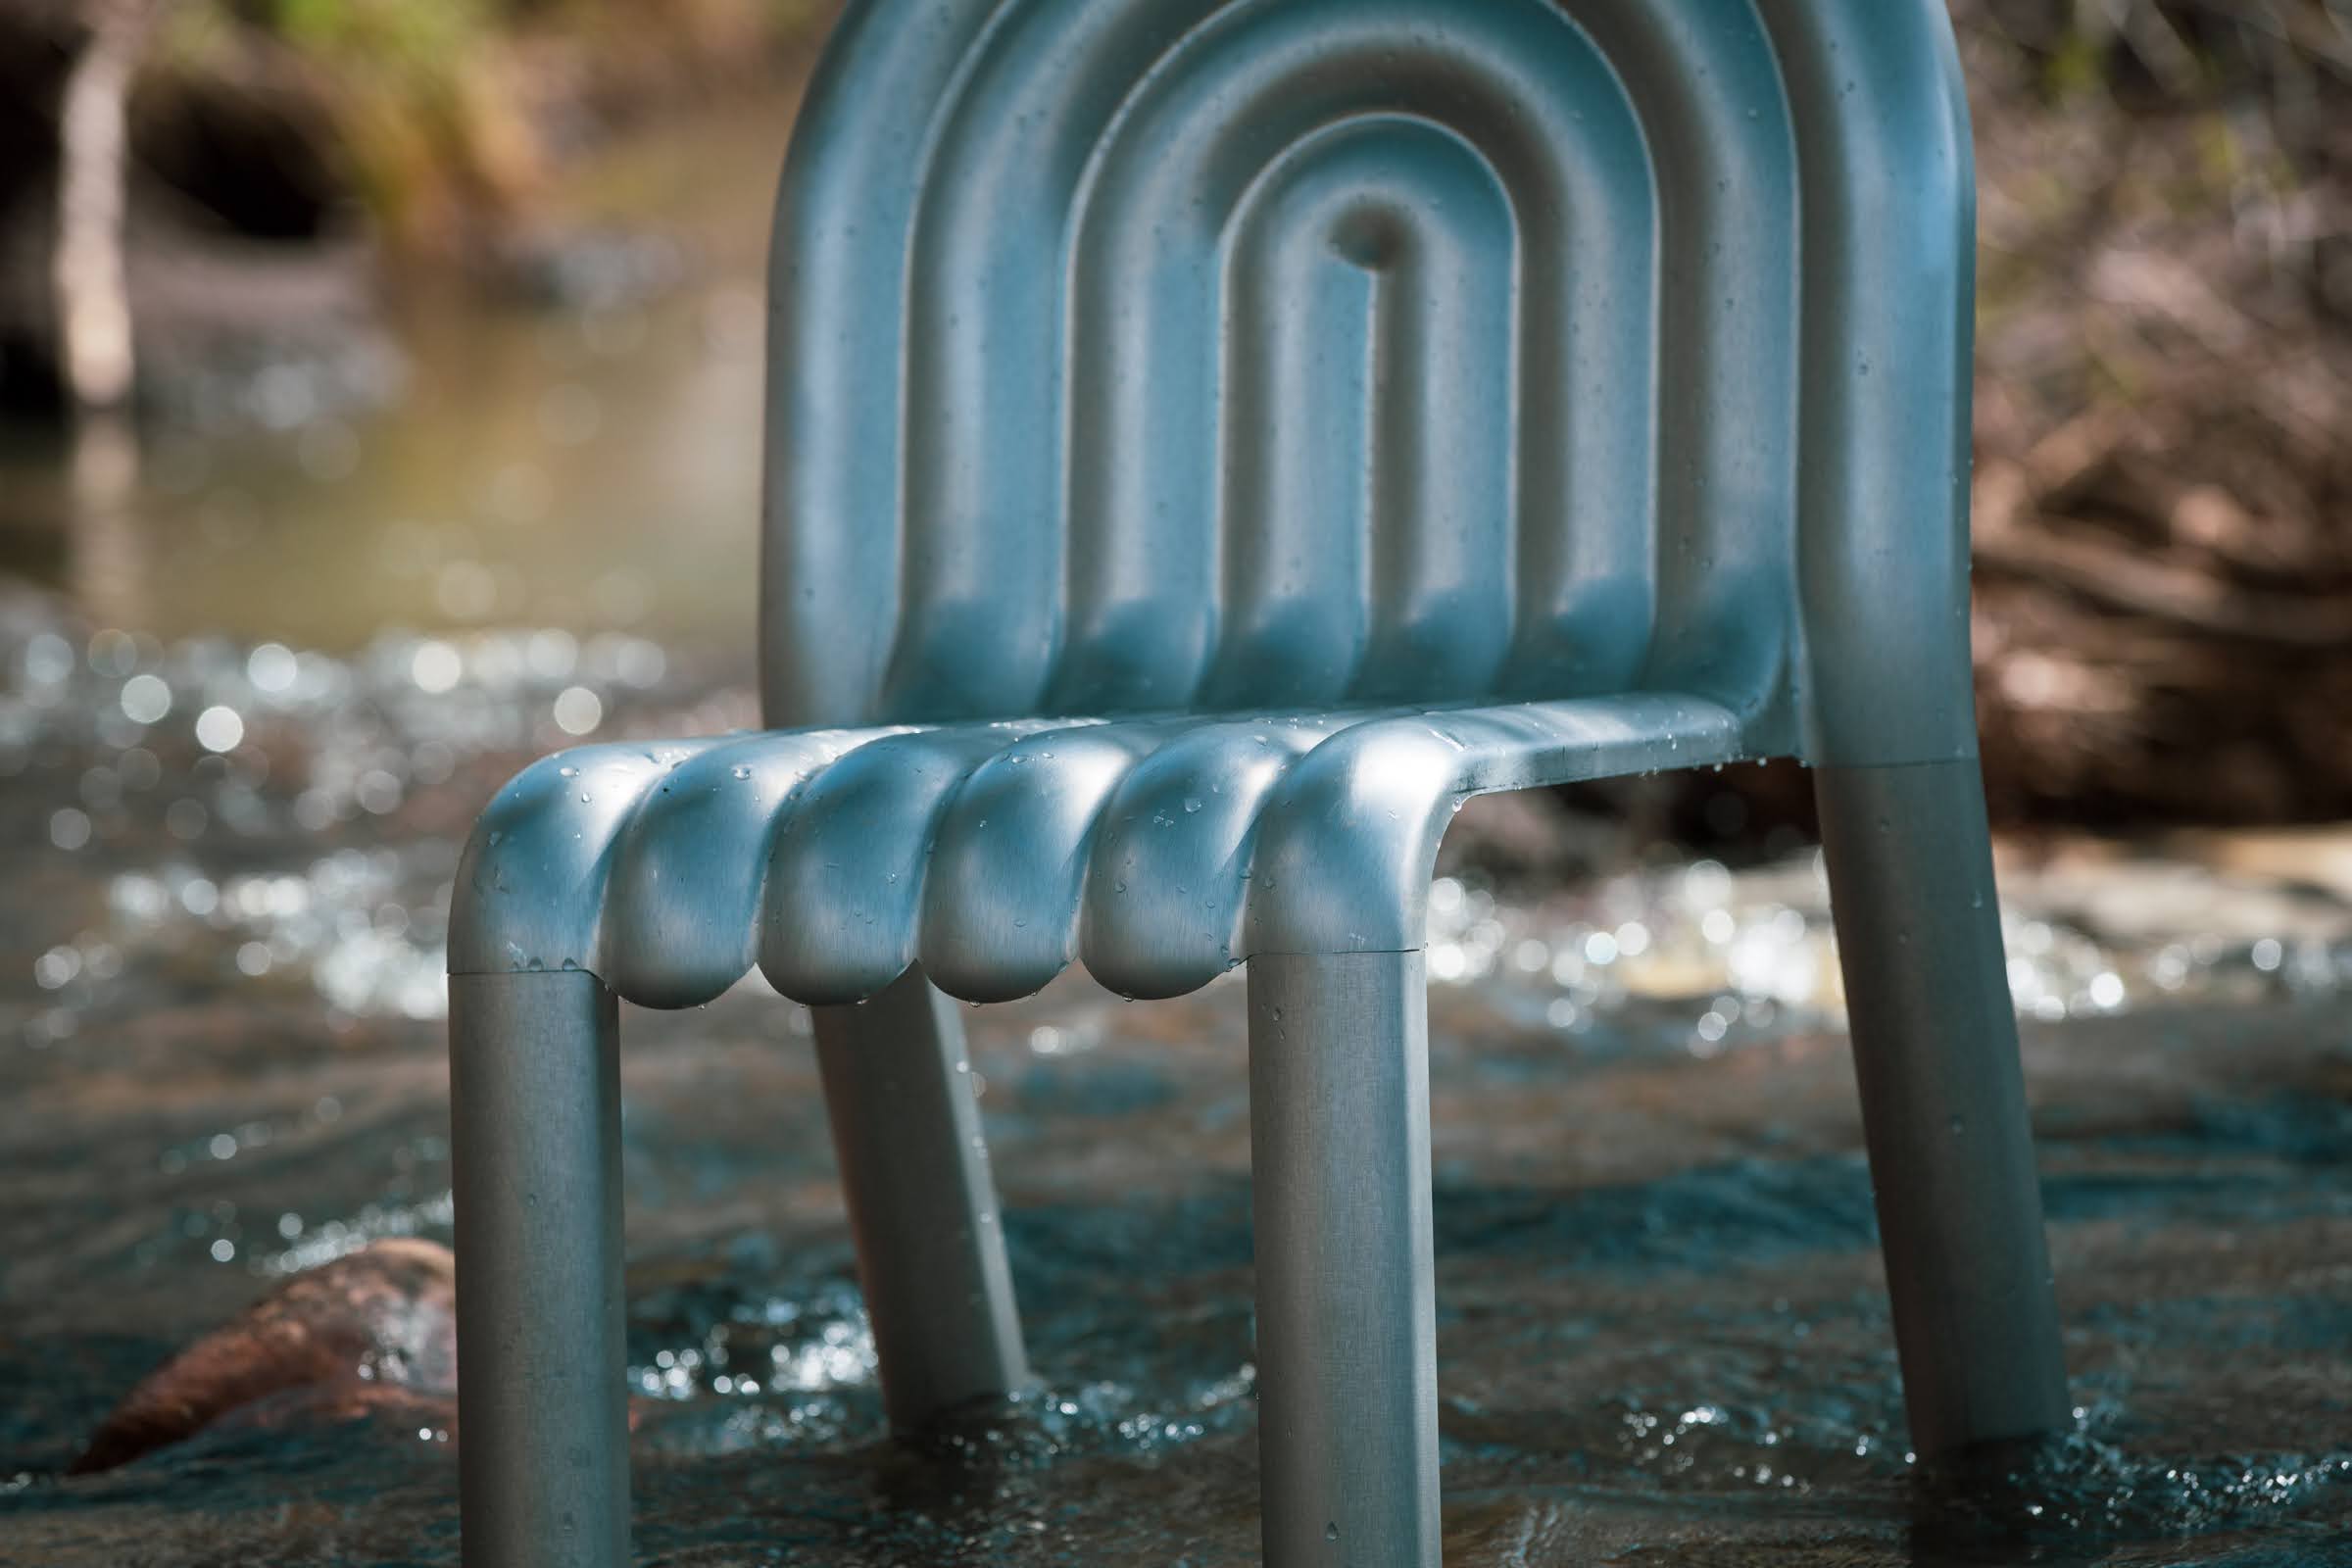 Krzesło Hydro - projekt Toma Dixona wykonany z anodowanego aluminium. Fot. mat. prasowe Hydro